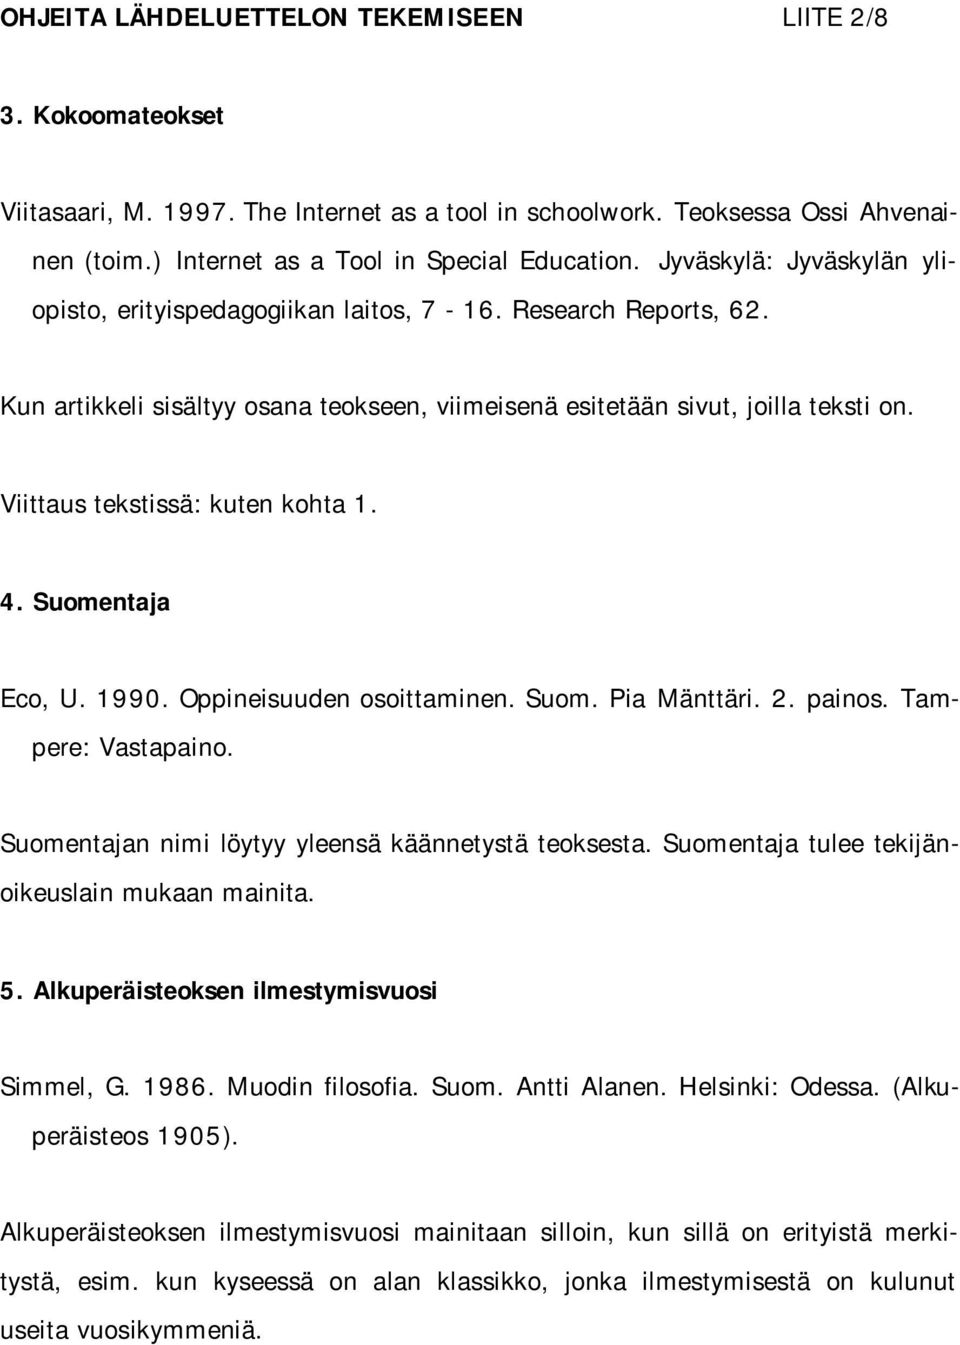 Viittaus tekstissä: kuten kohta 1. 4. Suomentaja Eco, U. 1990. Oppineisuuden osoittaminen. Suom. Pia Mänttäri. 2. painos. Tampere: Vastapaino. Suomentajan nimi löytyy yleensä käännetystä teoksesta.